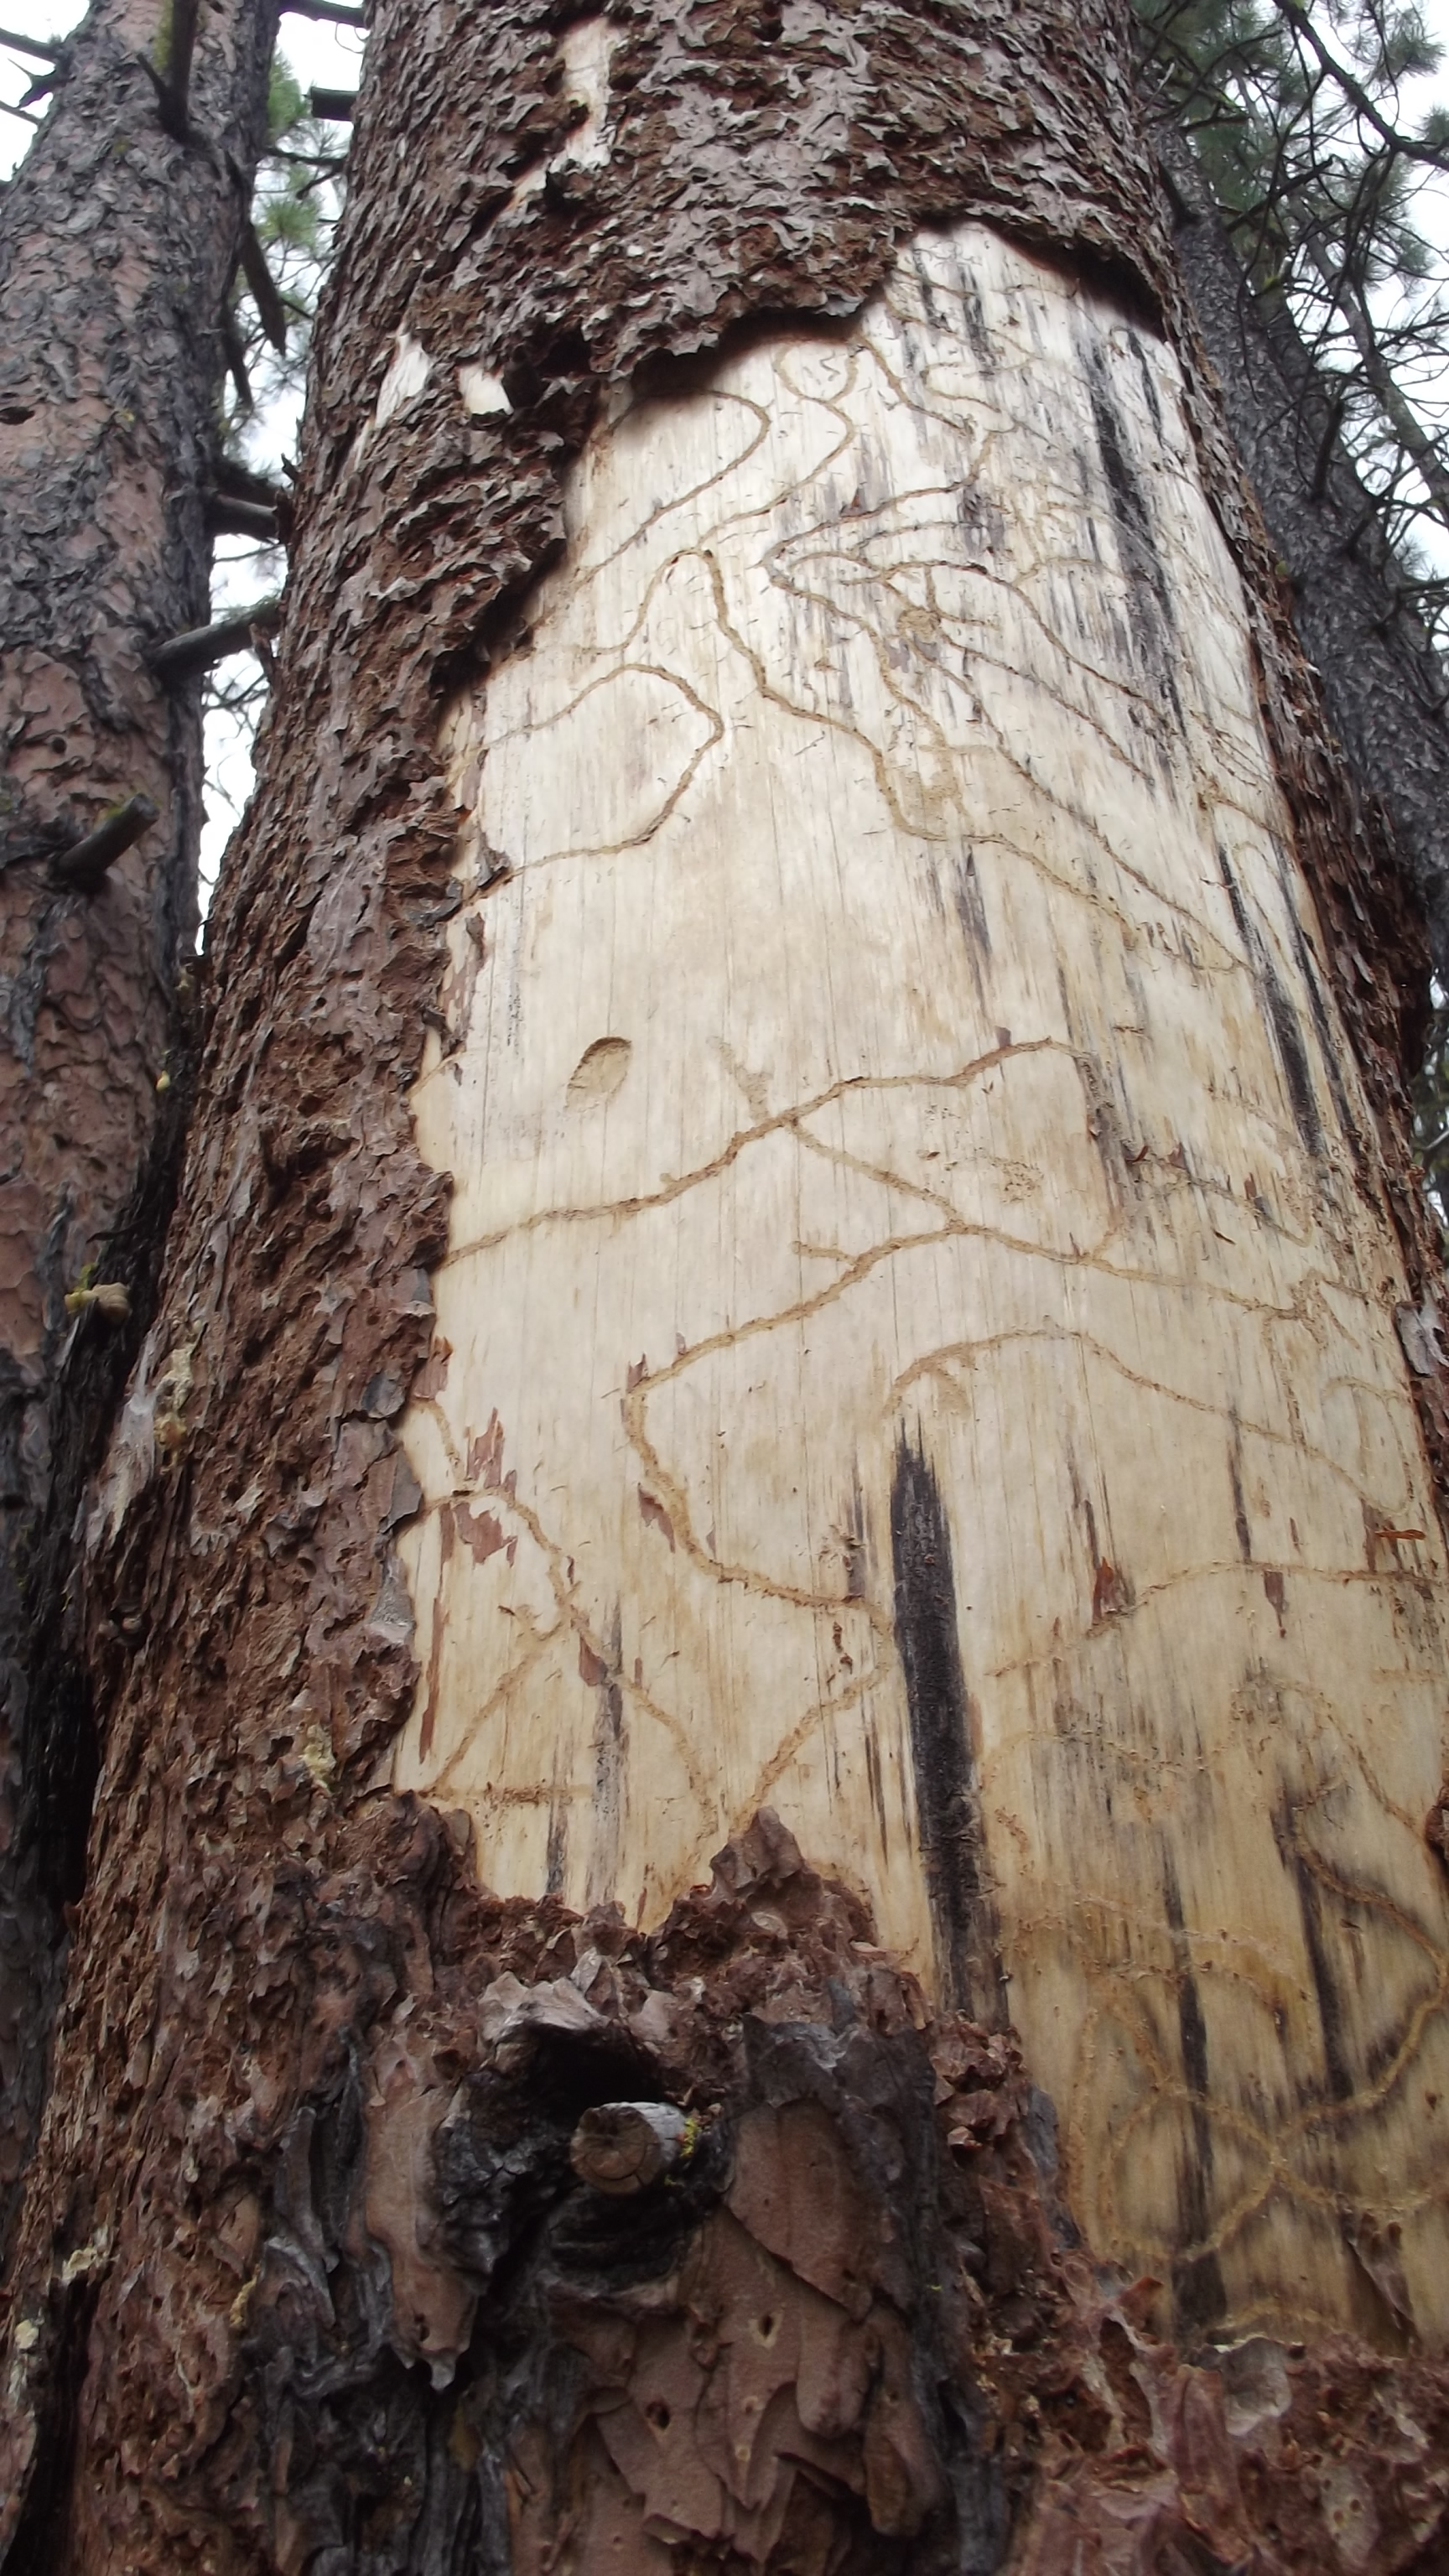 Gorge-Tree-Service-timber-cruise-oregon-washington-liscenced-website.jpg